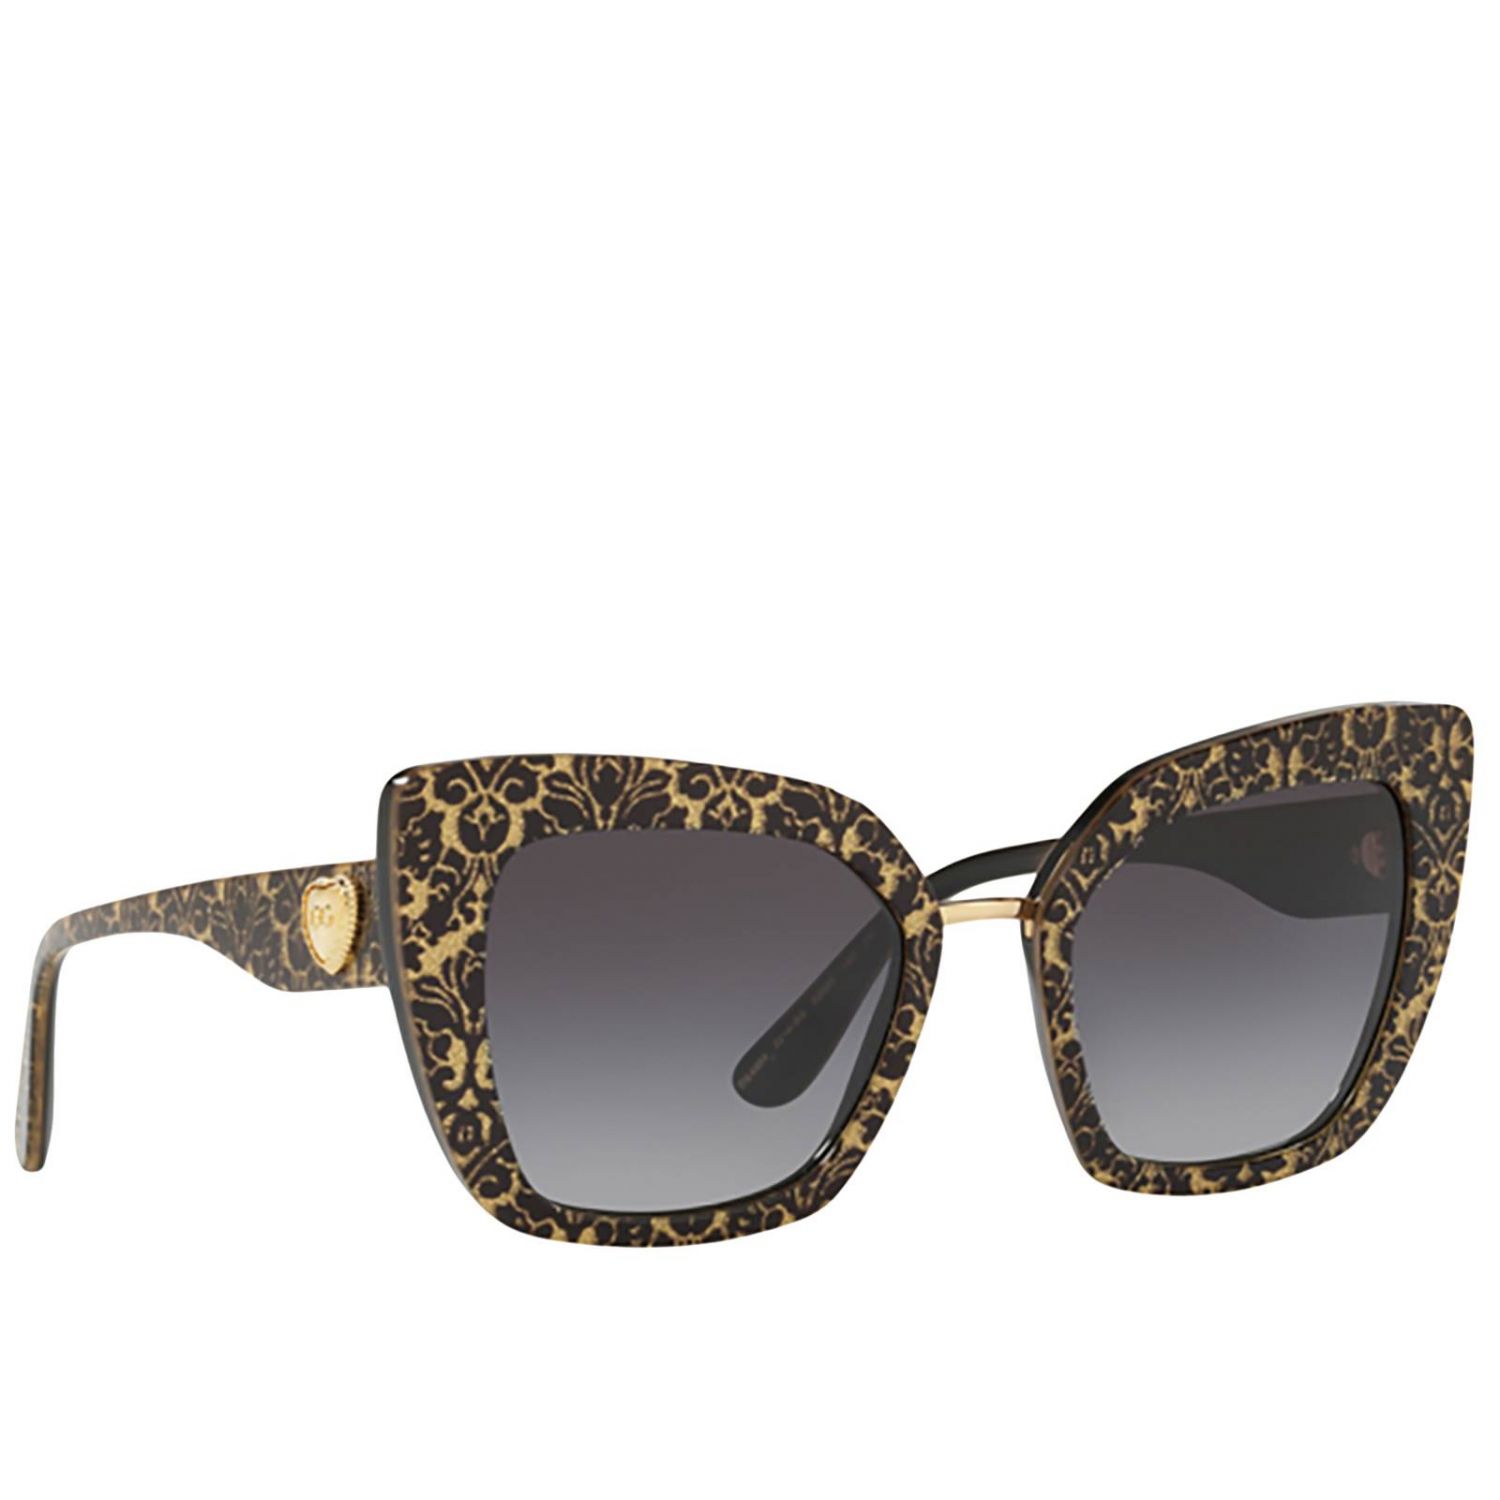 Солнцезащитные очки dolce gabbana. Очки Dolce Gabbana dg2105. DG 4359 501/8g очки. Очки Dolce Gabbana dg2064. Dolce Gabbana dg4359.